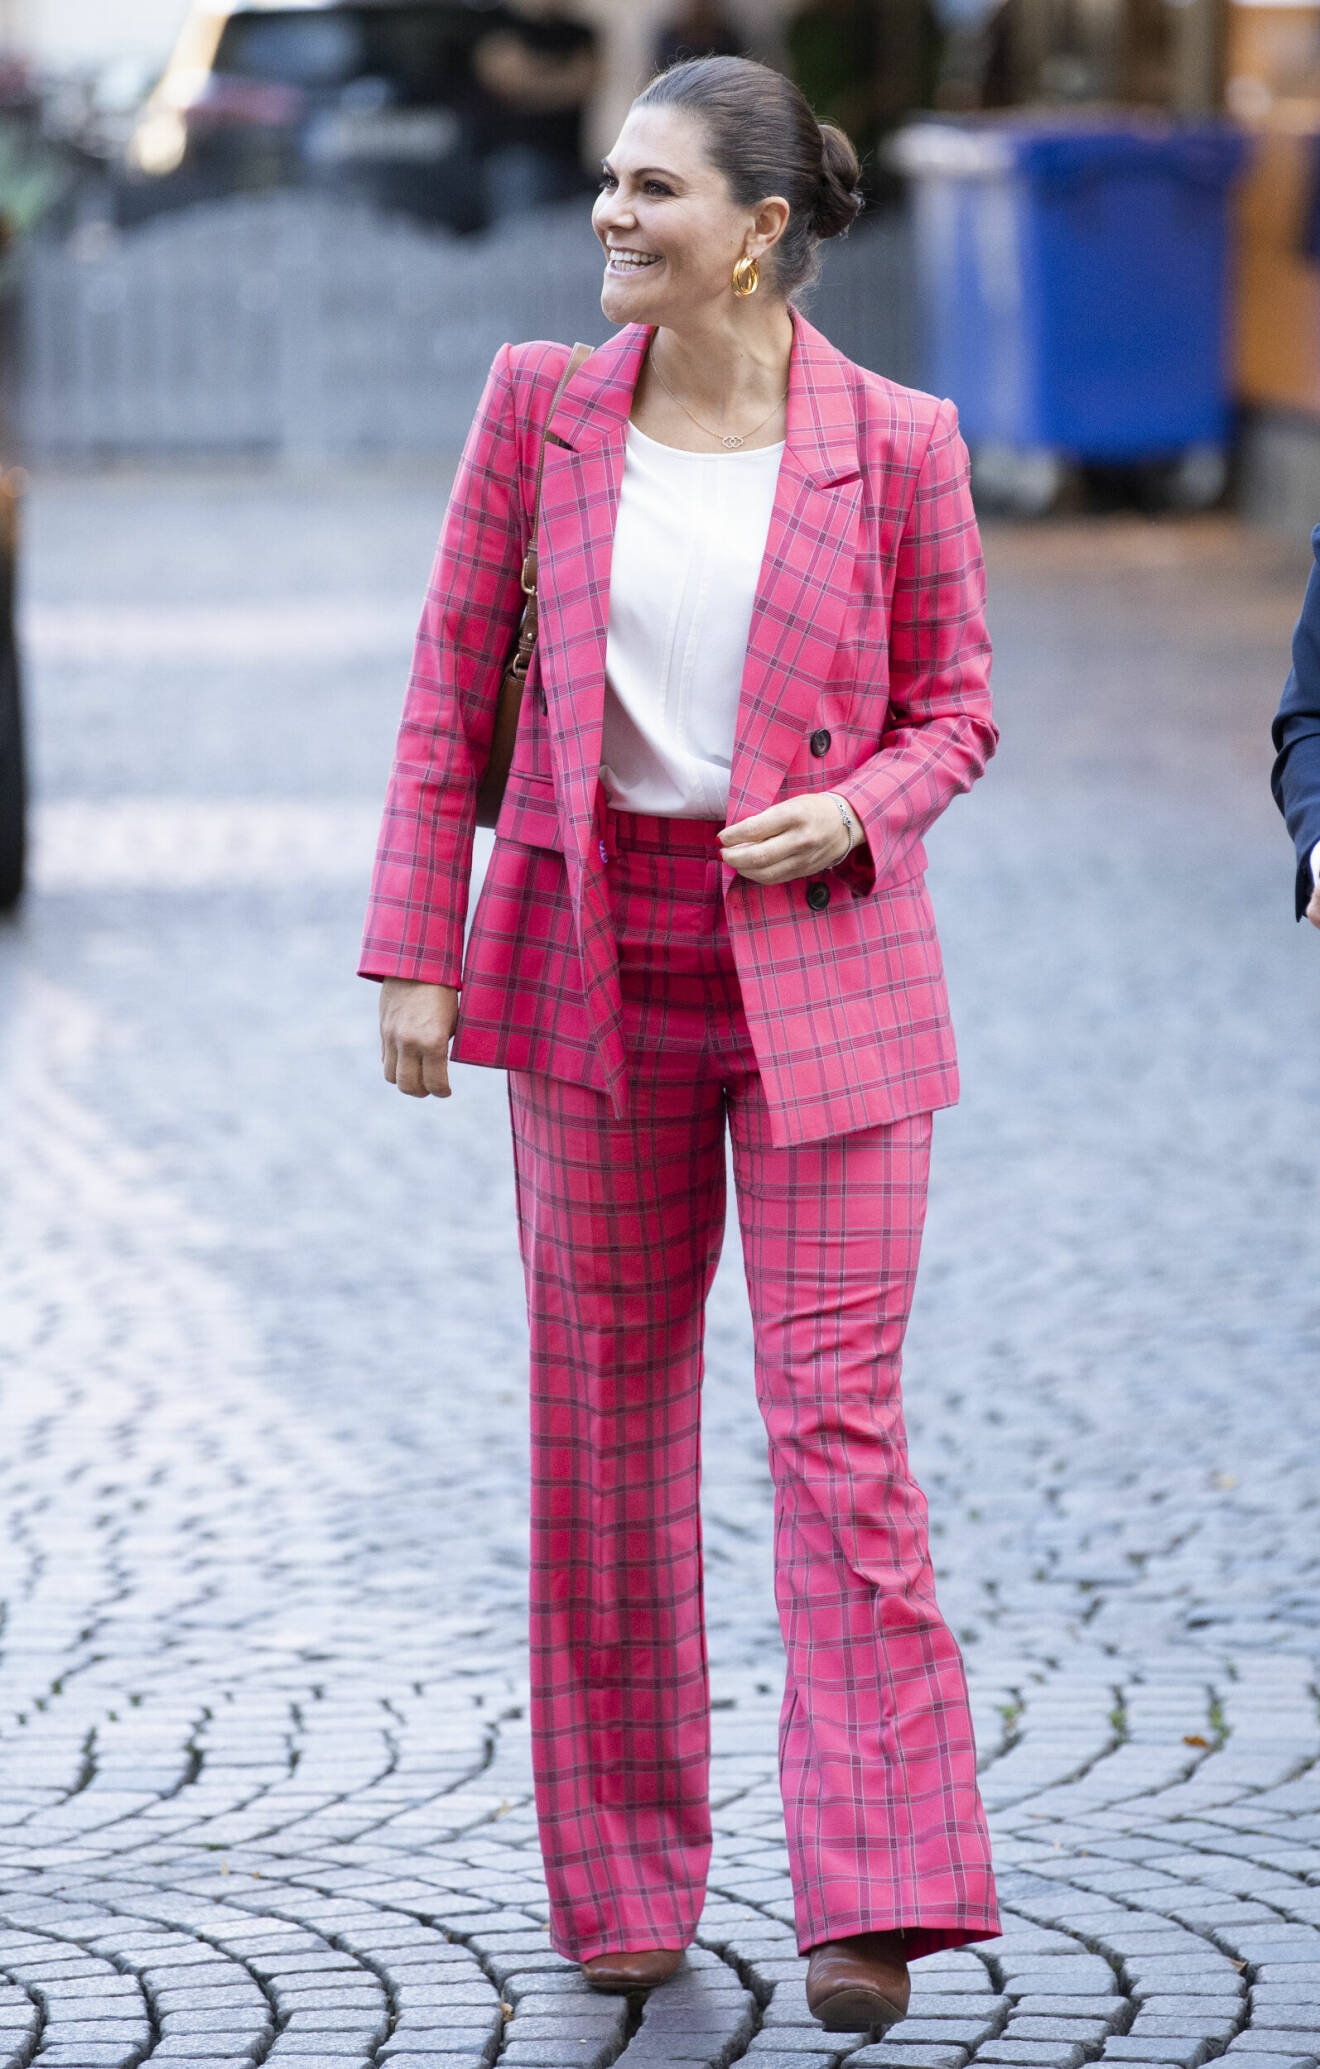 Kronprinsessan Victoria i Gävle 2020 i rosa rutig kostym från By Malina